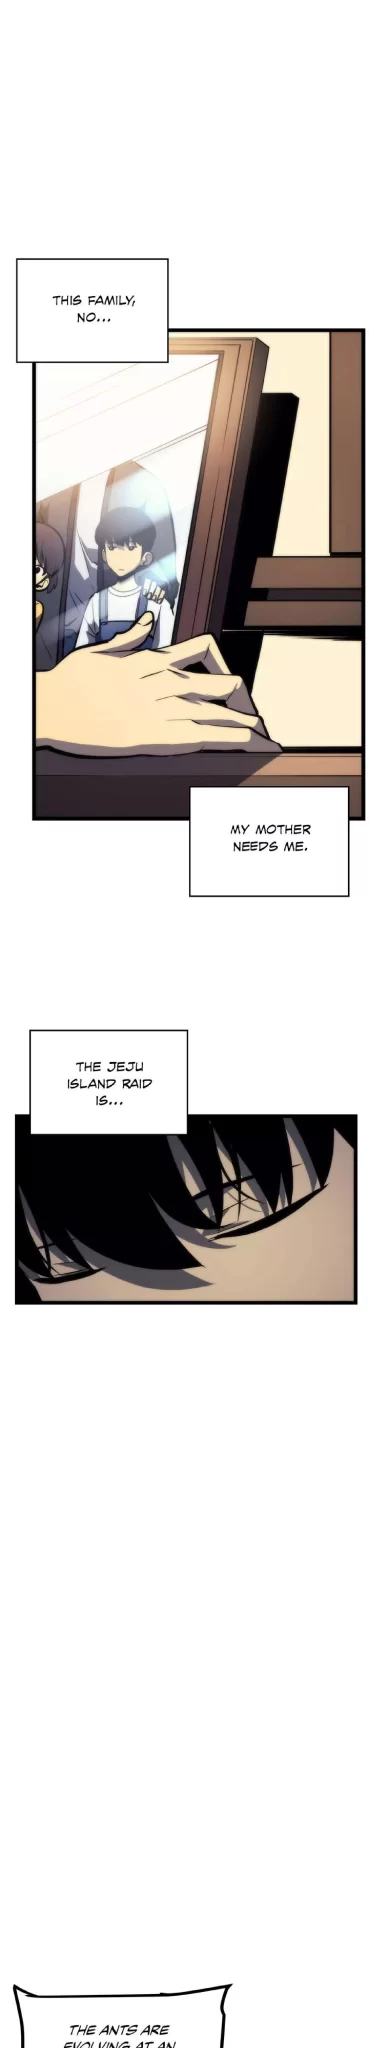 Solo Leveling Manga Manga Chapter - 94 - image 20